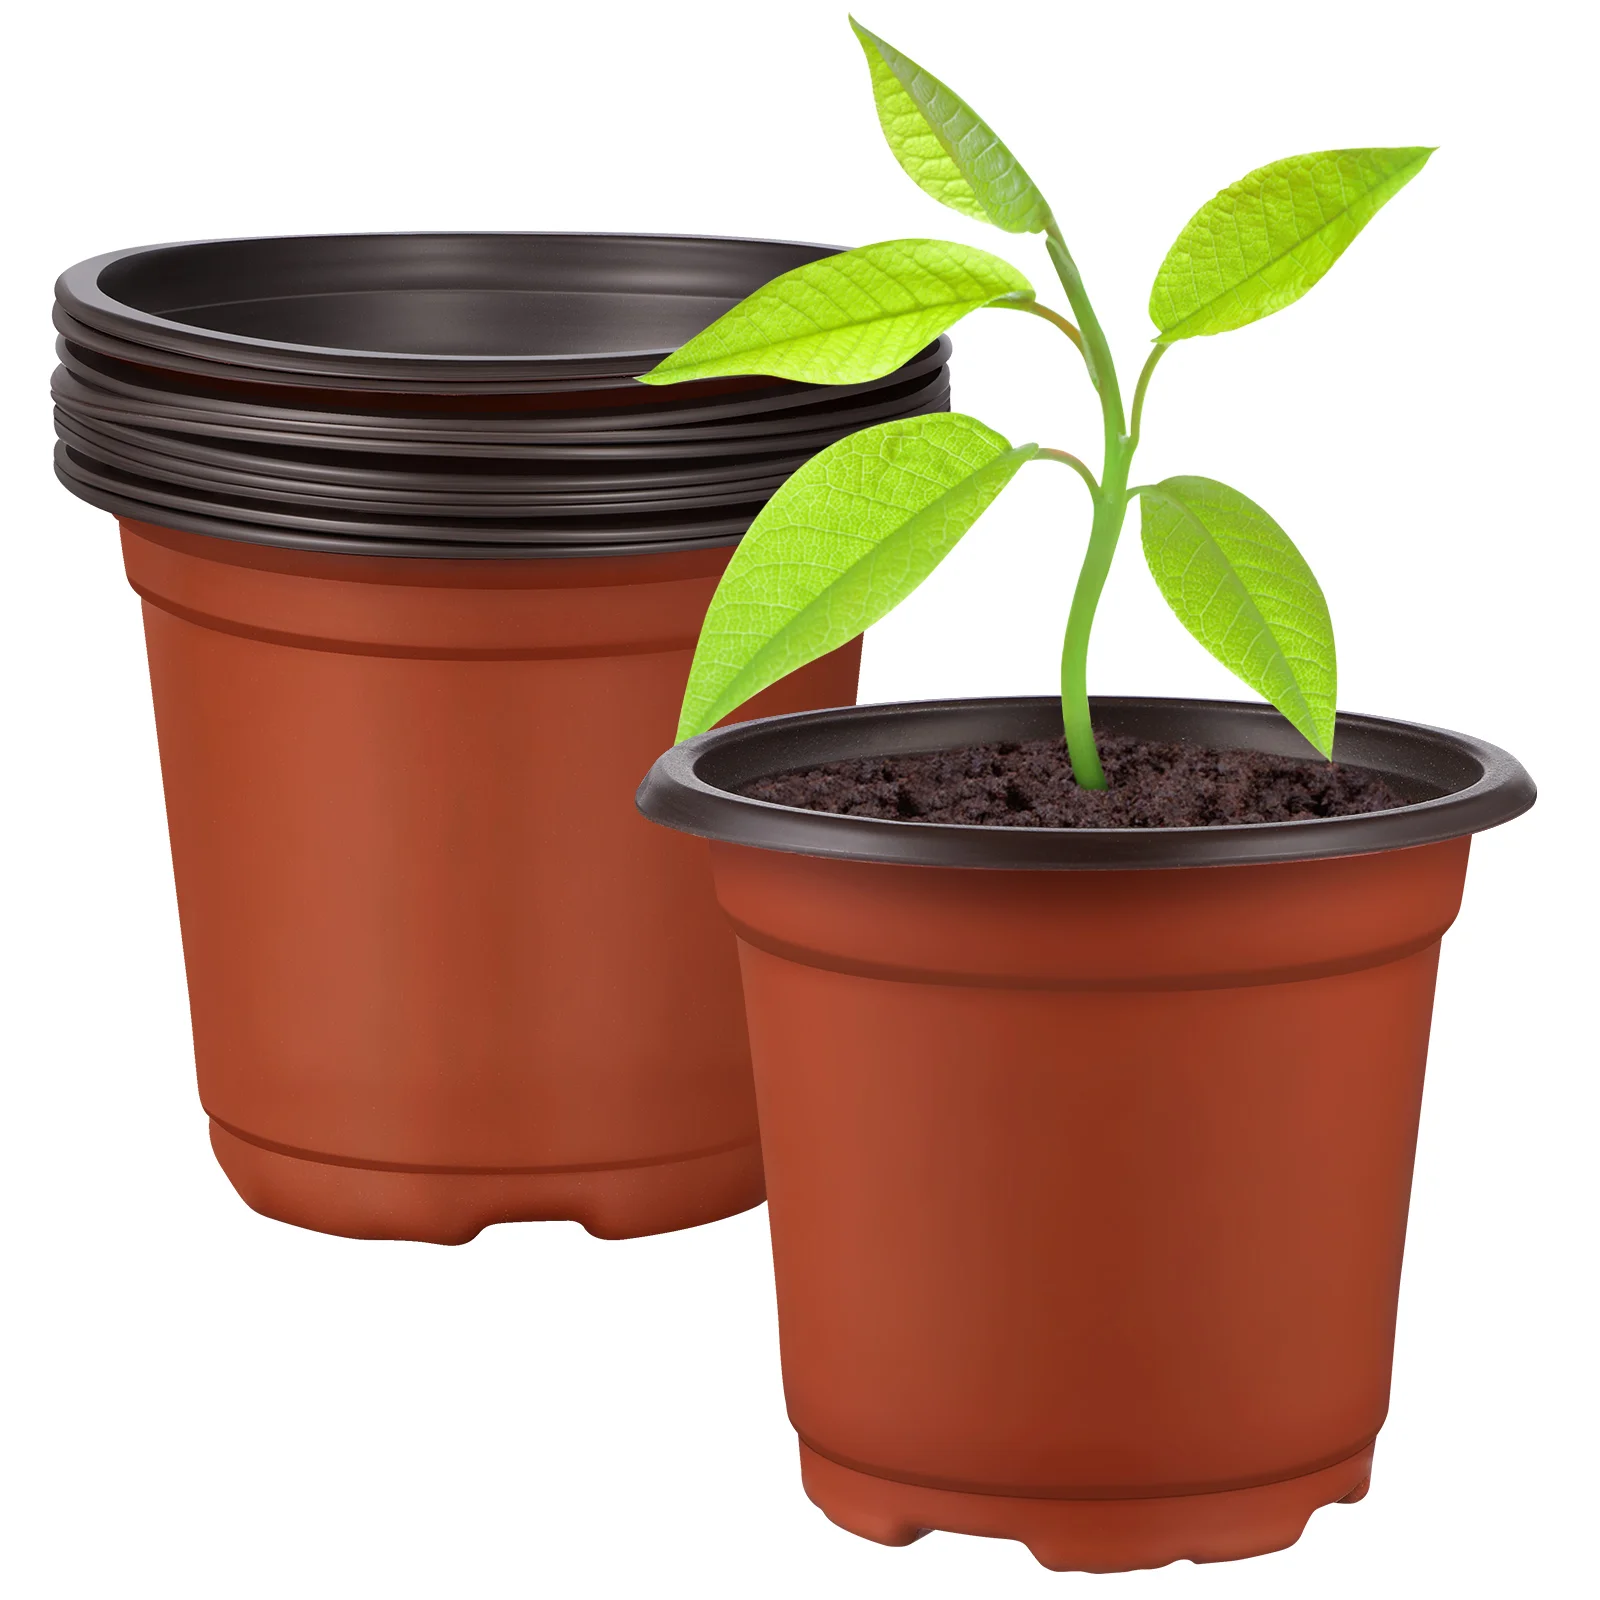 

10Pcs Plastic Nursery Pot Flowerpots Planter Container for Flowers Plants Vegetables Succulents Planting